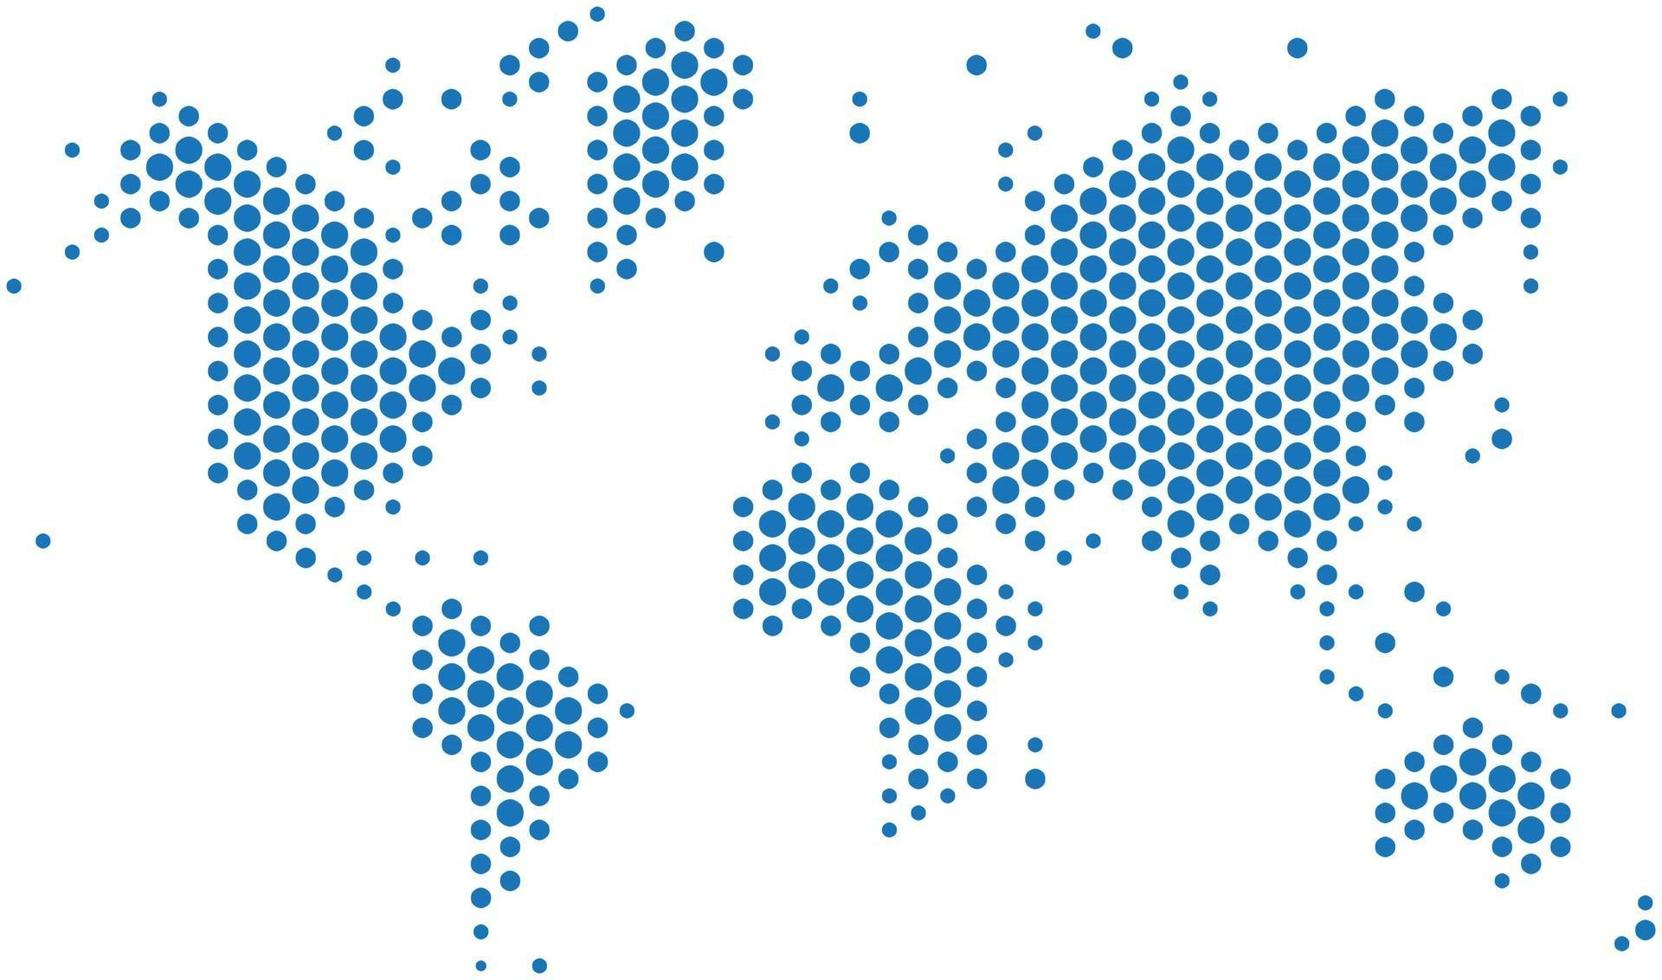 Mapa del mundo de puntos azules sobre fondo blanco. vector